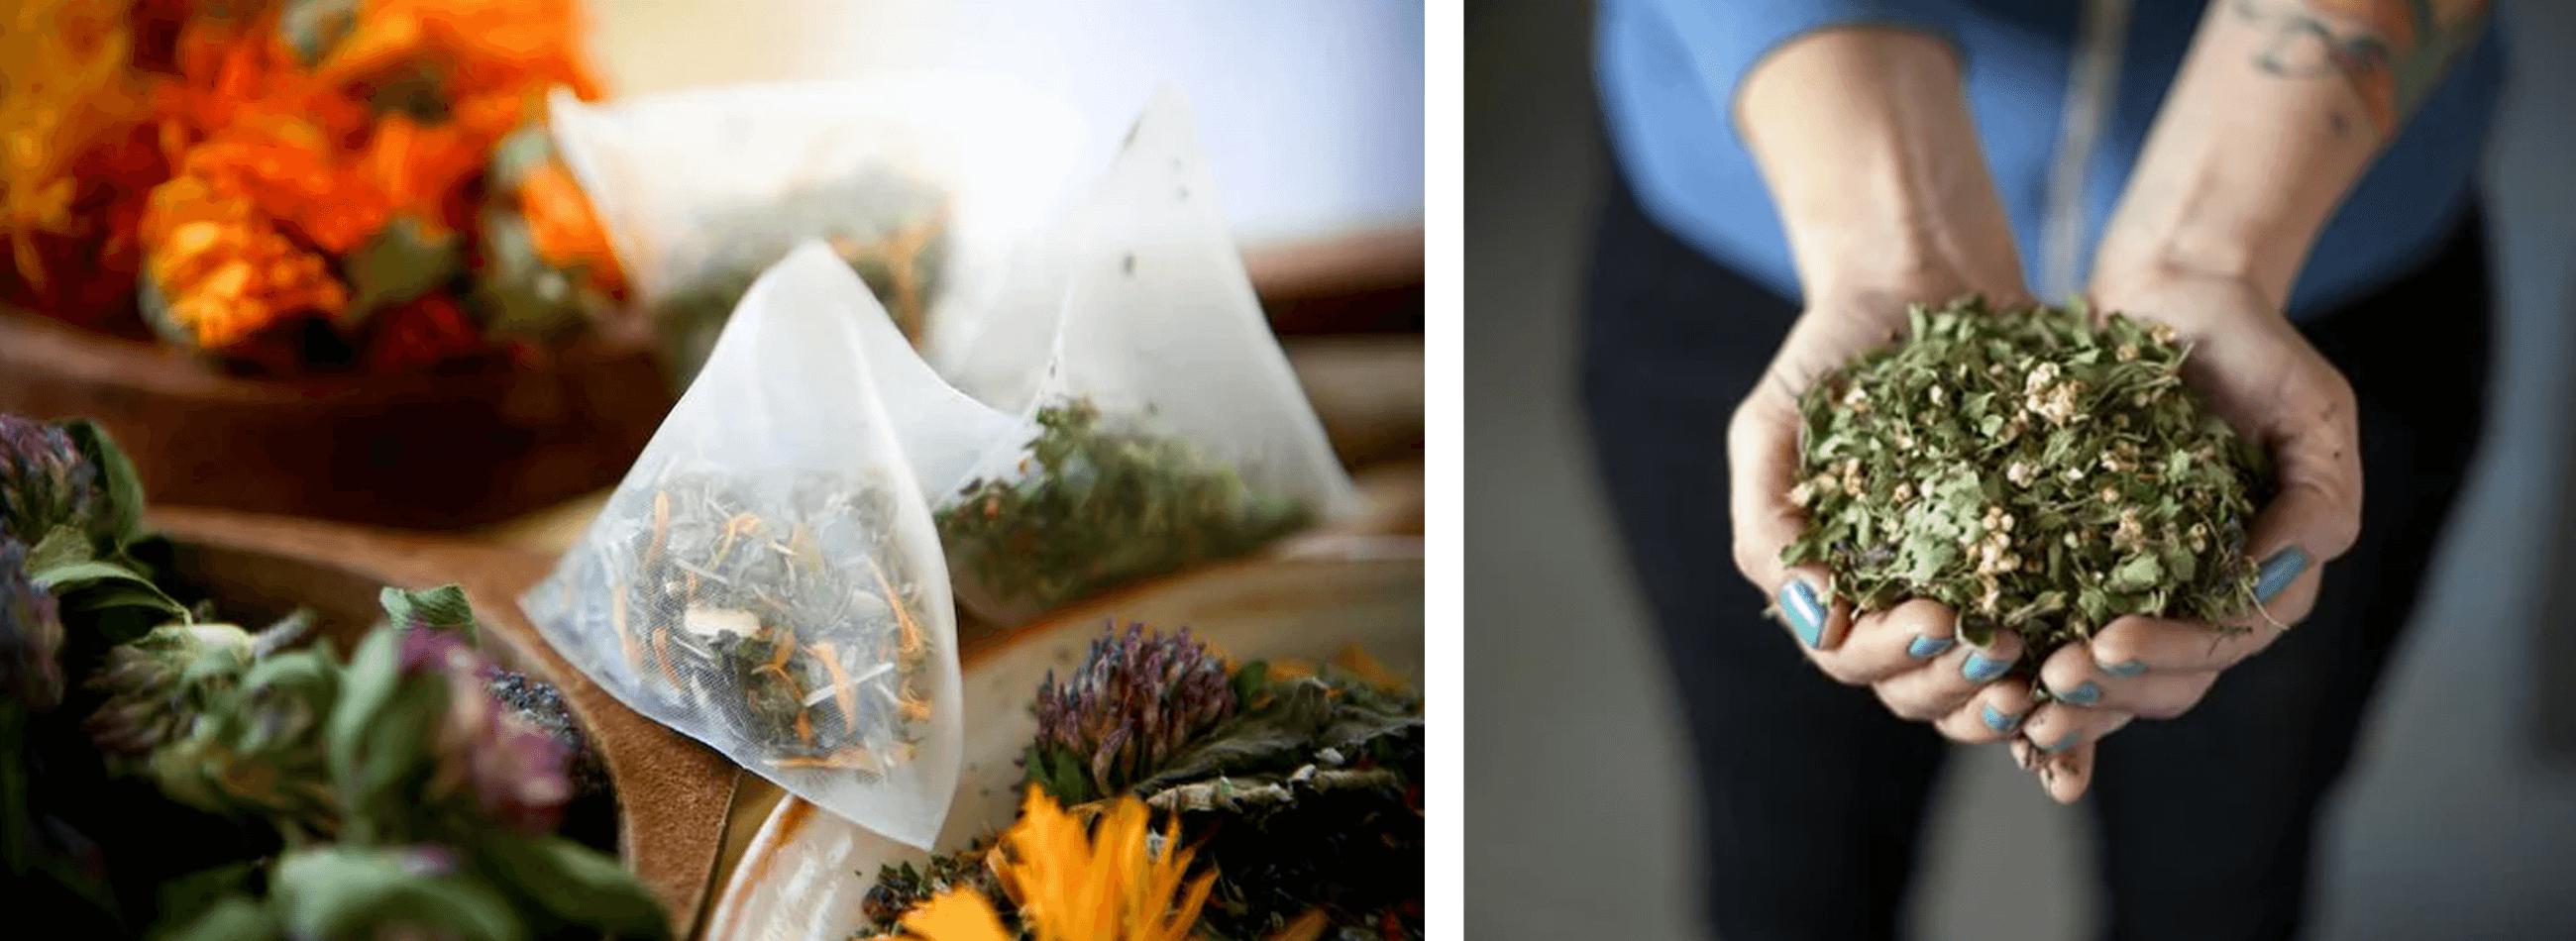 Flying Bird Botanicals tea in open hands and compostable tea bag